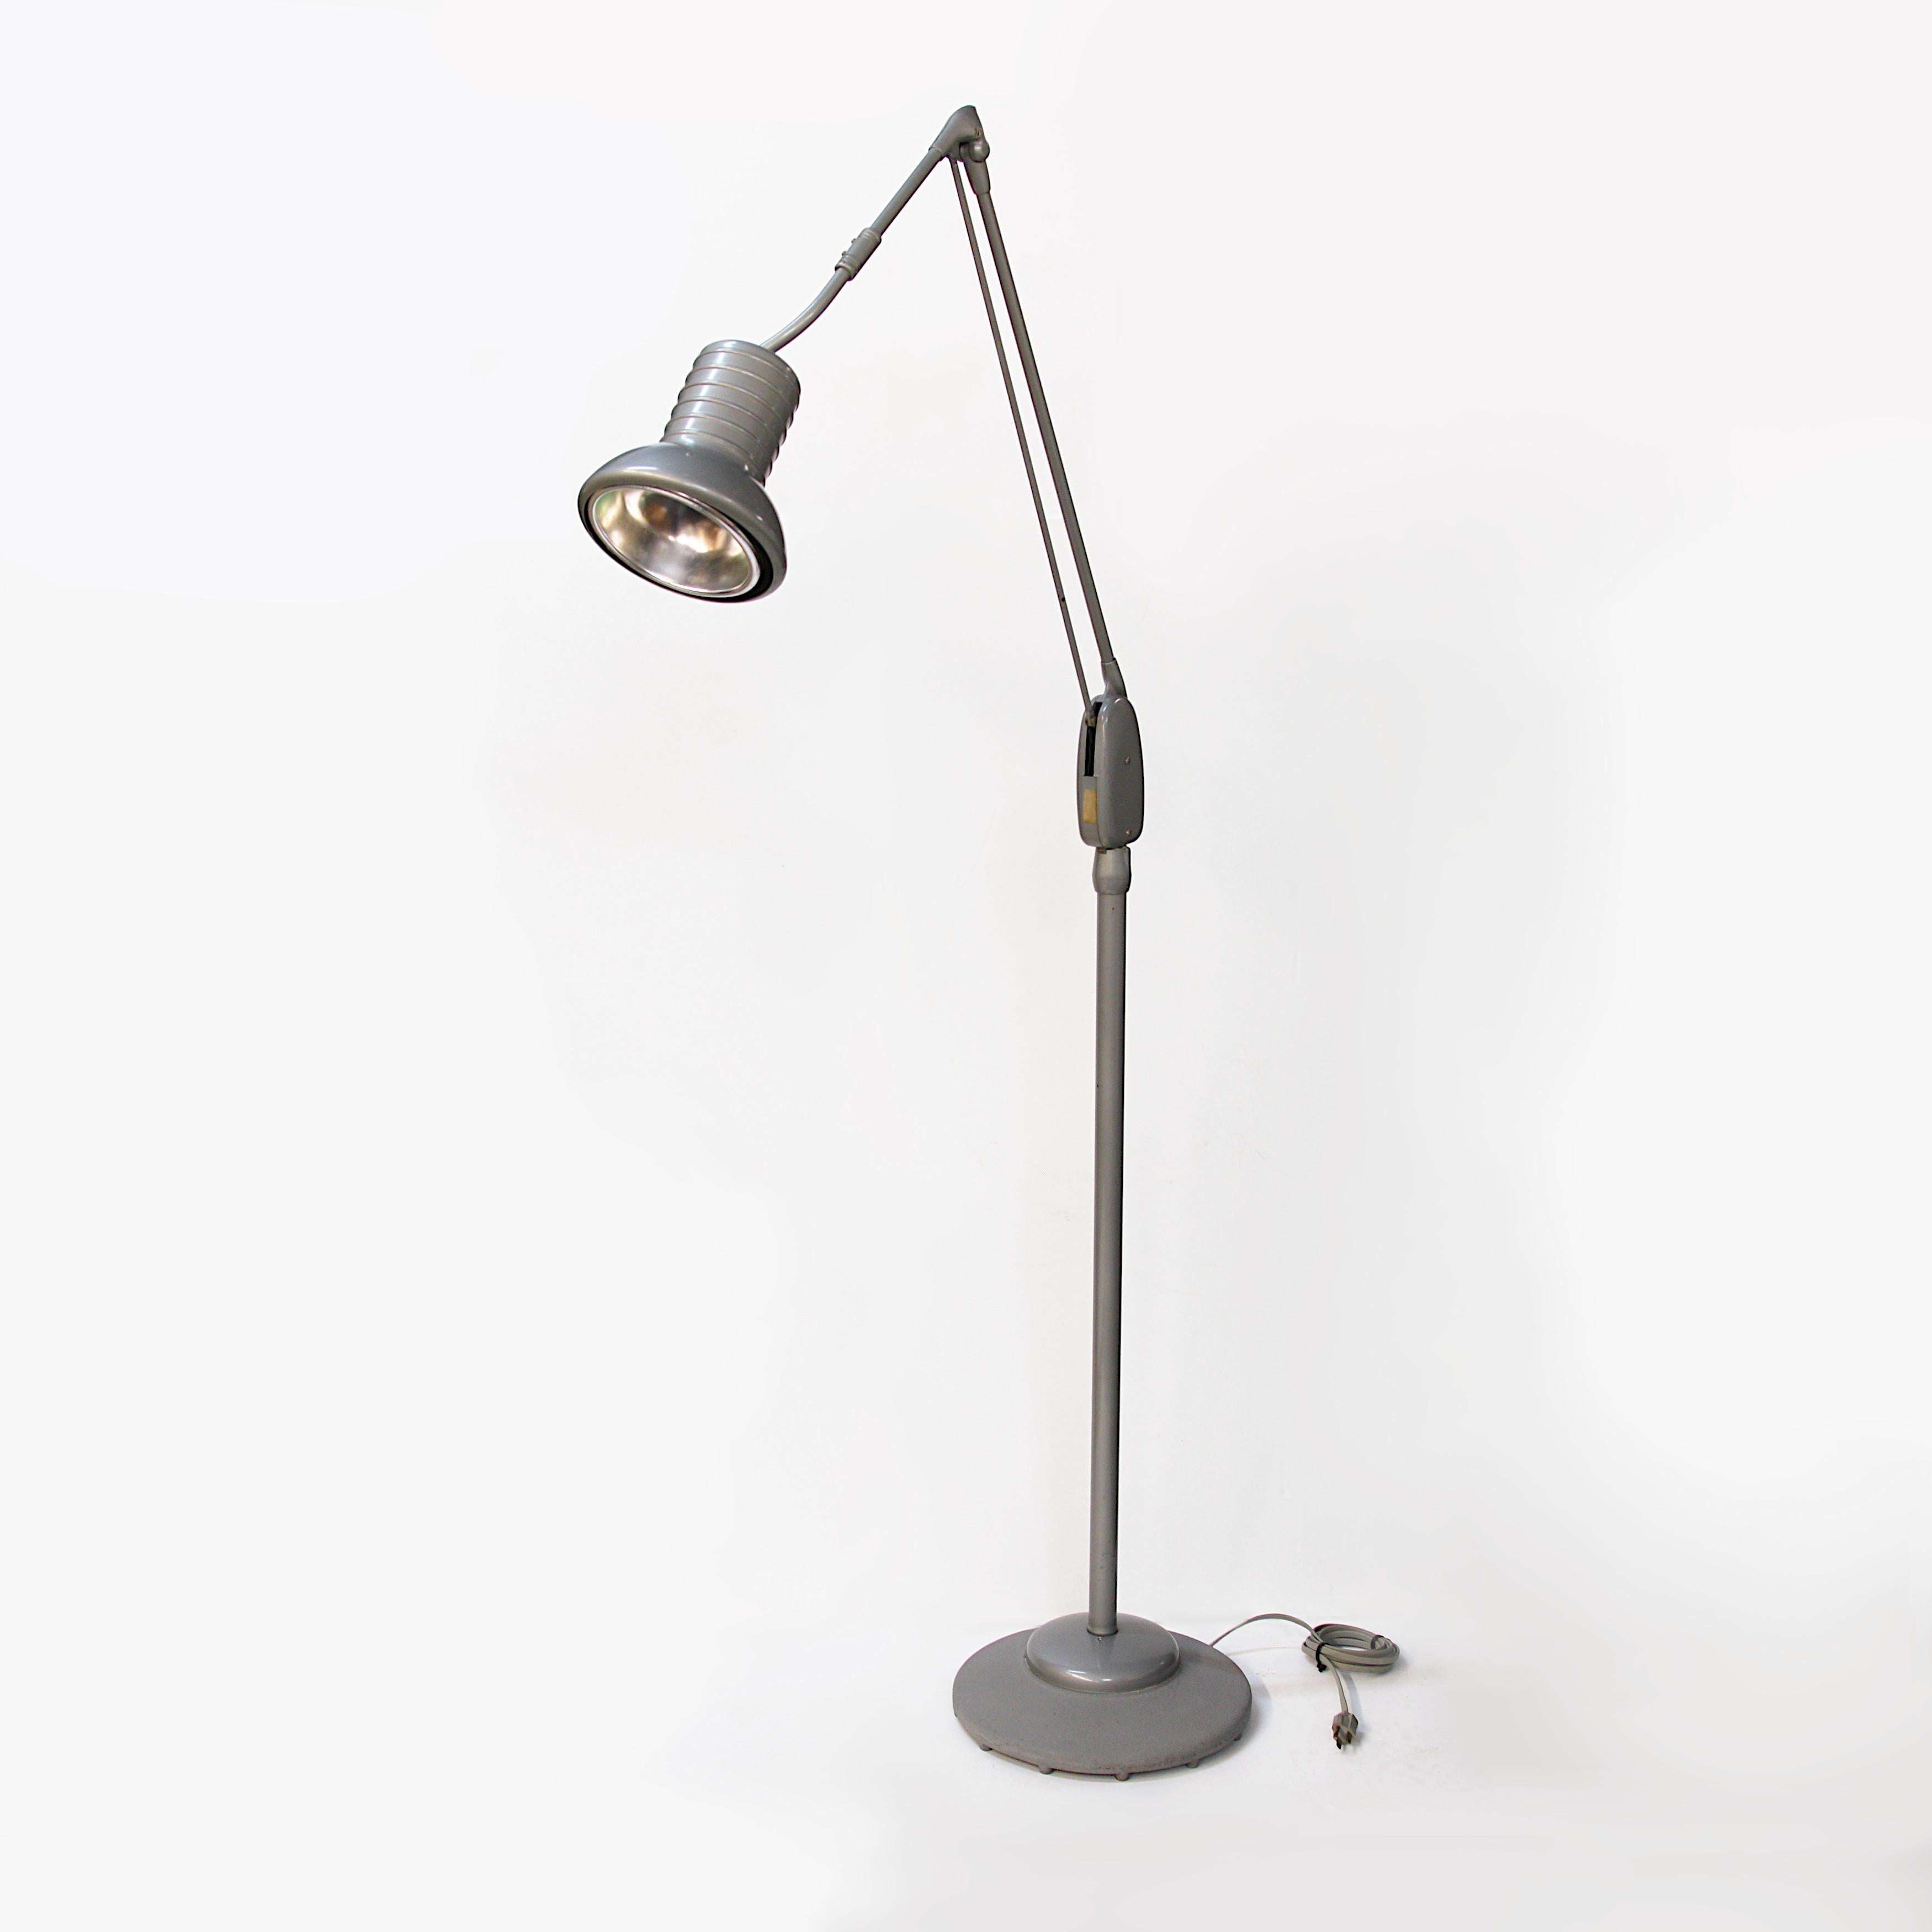 Cette lampe est une pièce rare du design industriel moderne du milieu du siècle et présente la peinture originale grise/argentée, difficile à trouver, qui met magnifiquement en valeur la forme. Cependant, la fonction de cette lampe est à la hauteur